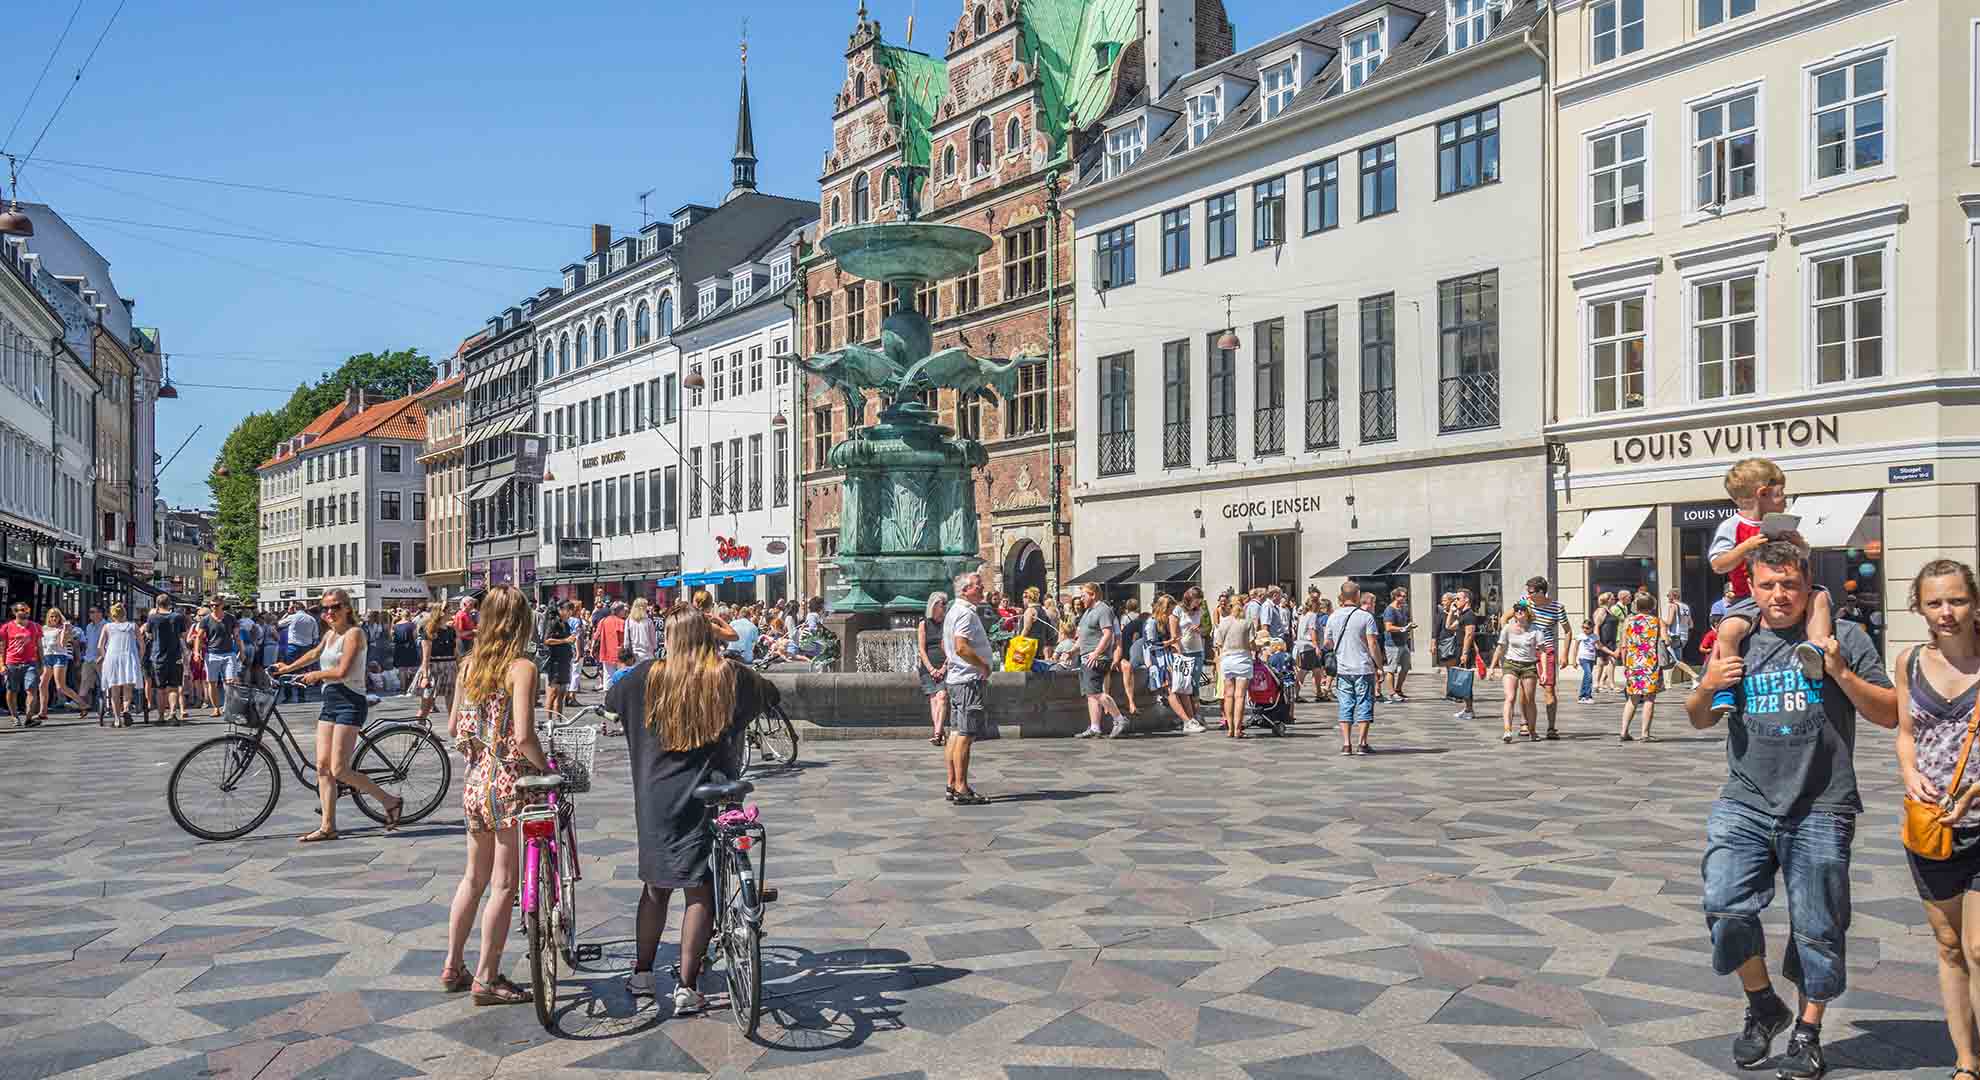 Centro de Copenhague, una ciudad donde la planificación urbanística se ha centrado en la gente desde los años sesenta. Alamy stock photo